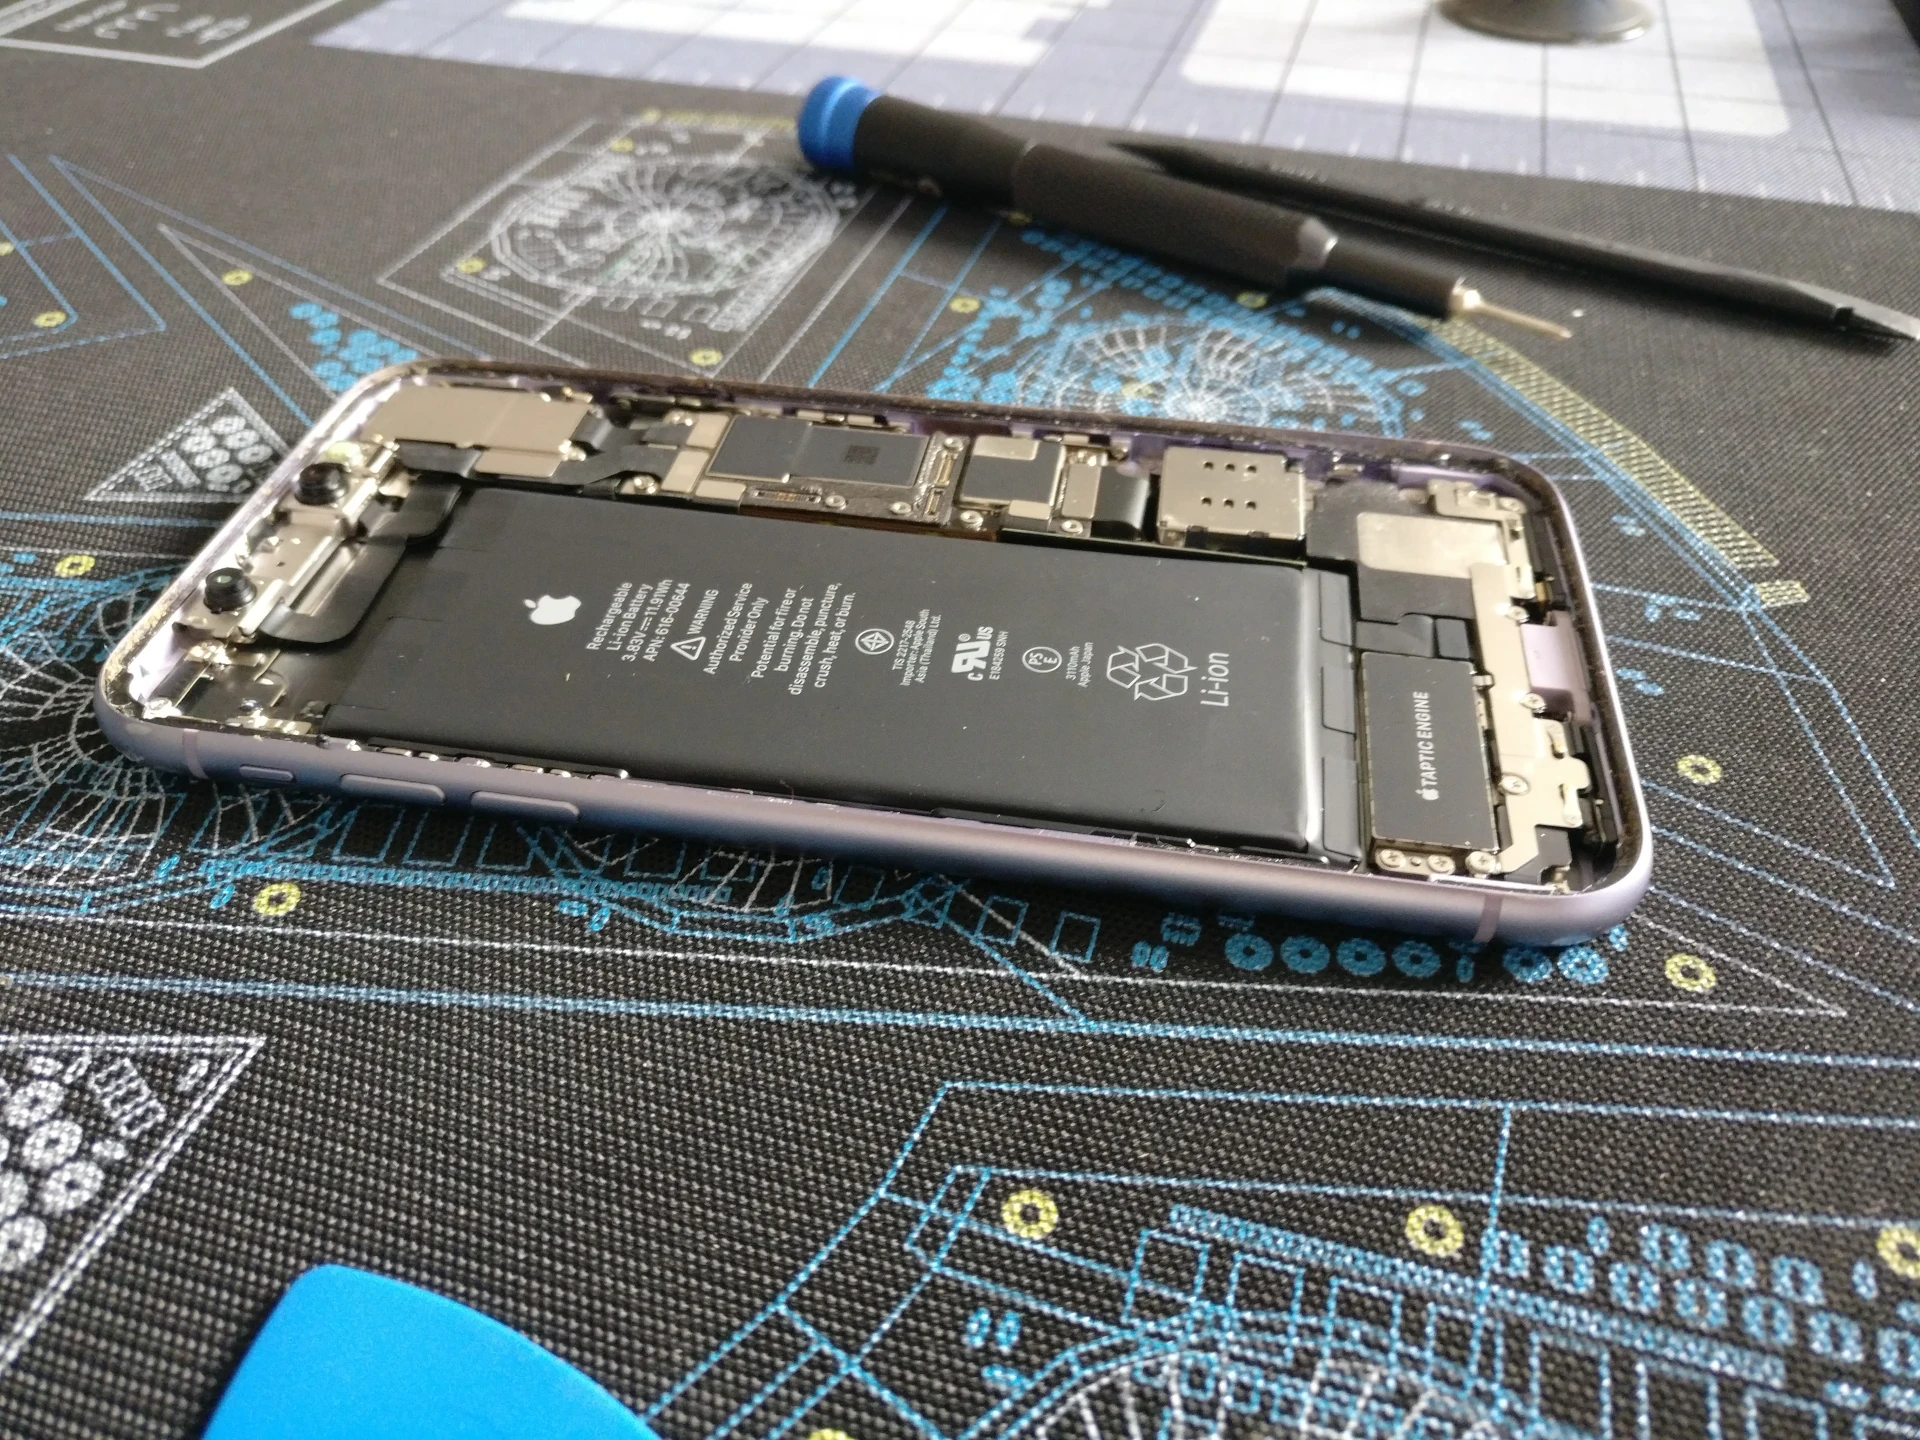 iPhone en cours de réparation